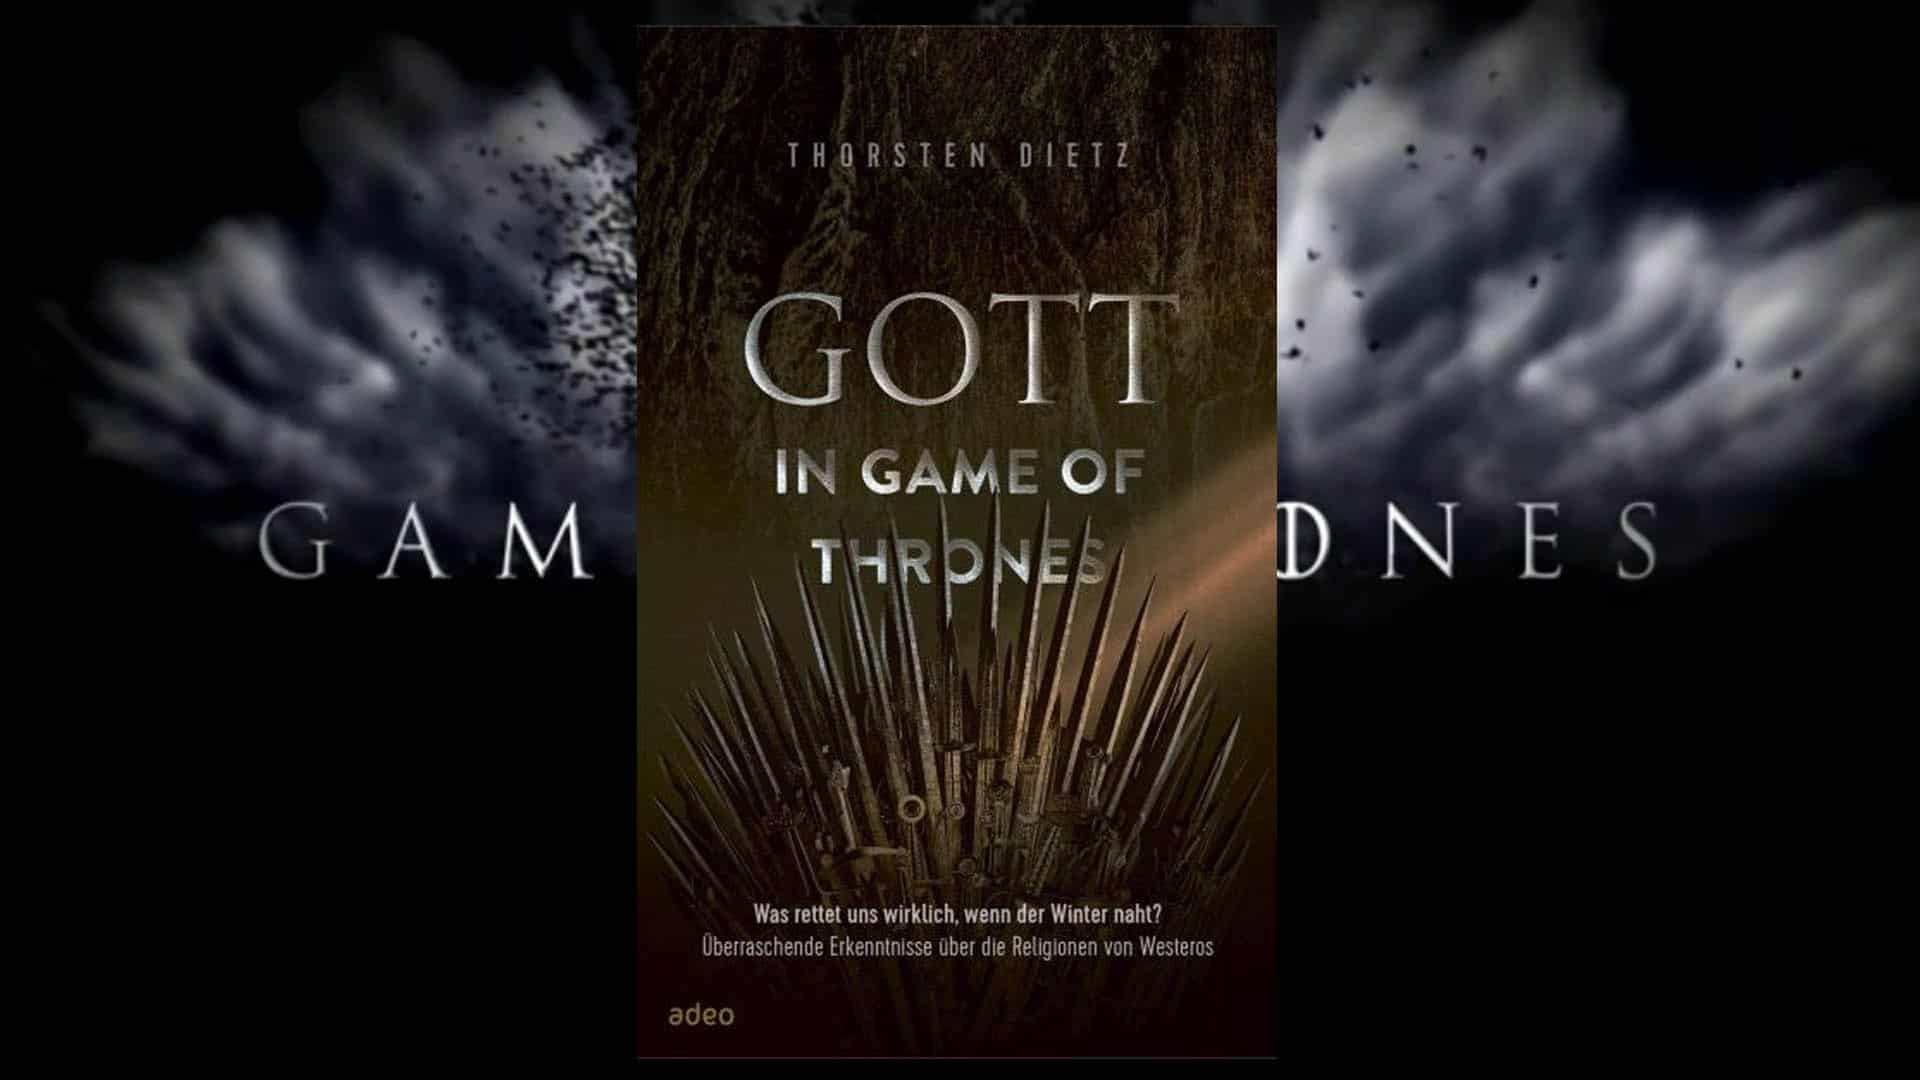 Das Buch „Gott in Game of Thrones“ vom Theologen Thorsten Dietz erscheint am 21. Februar 2020